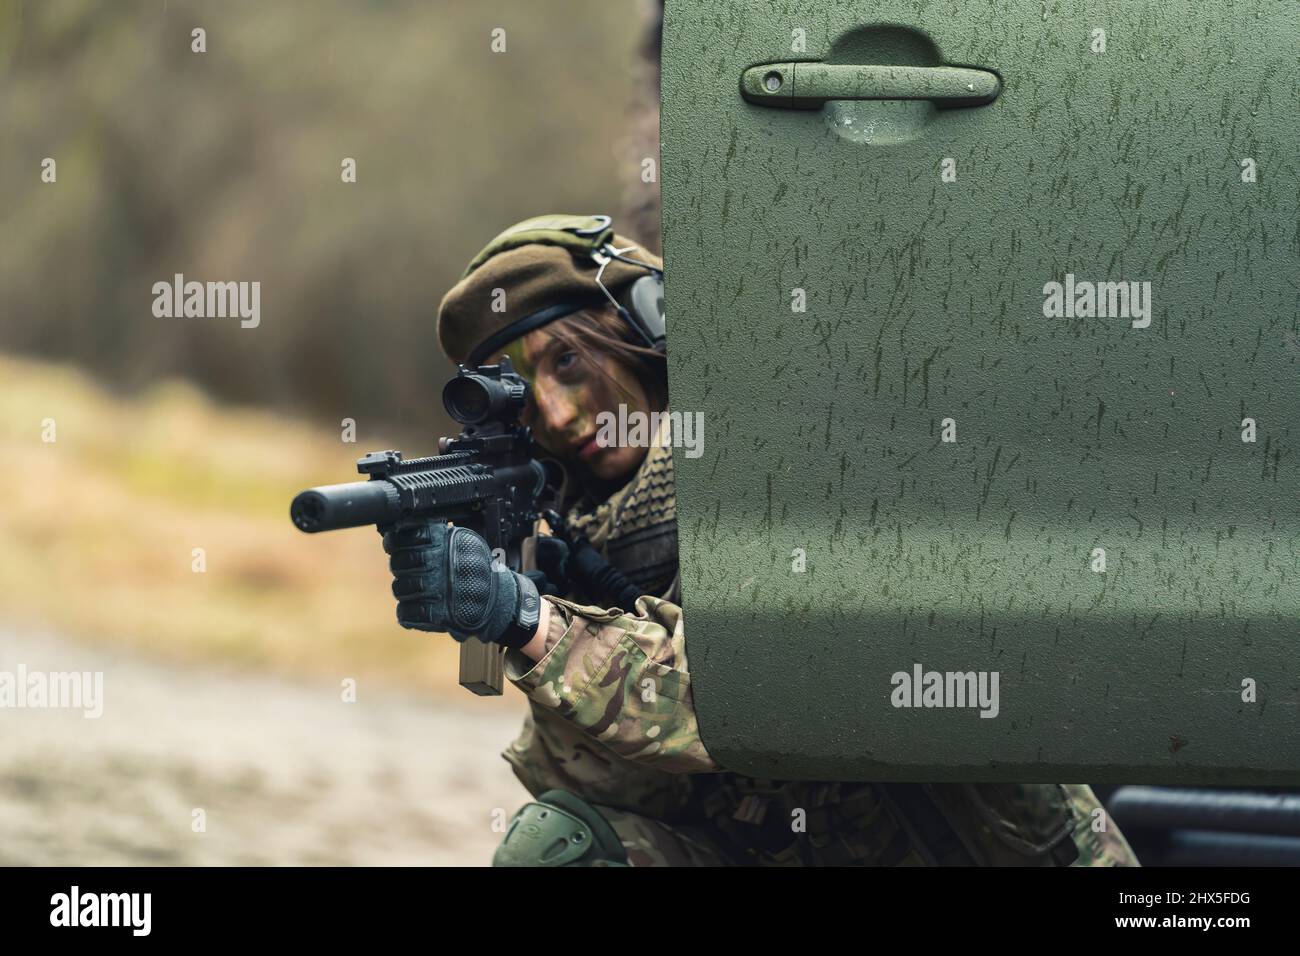 Fiese feminine Soldatin, die sich auf das Verstecken des Ziels Hochwertige Fotos Stockfoto